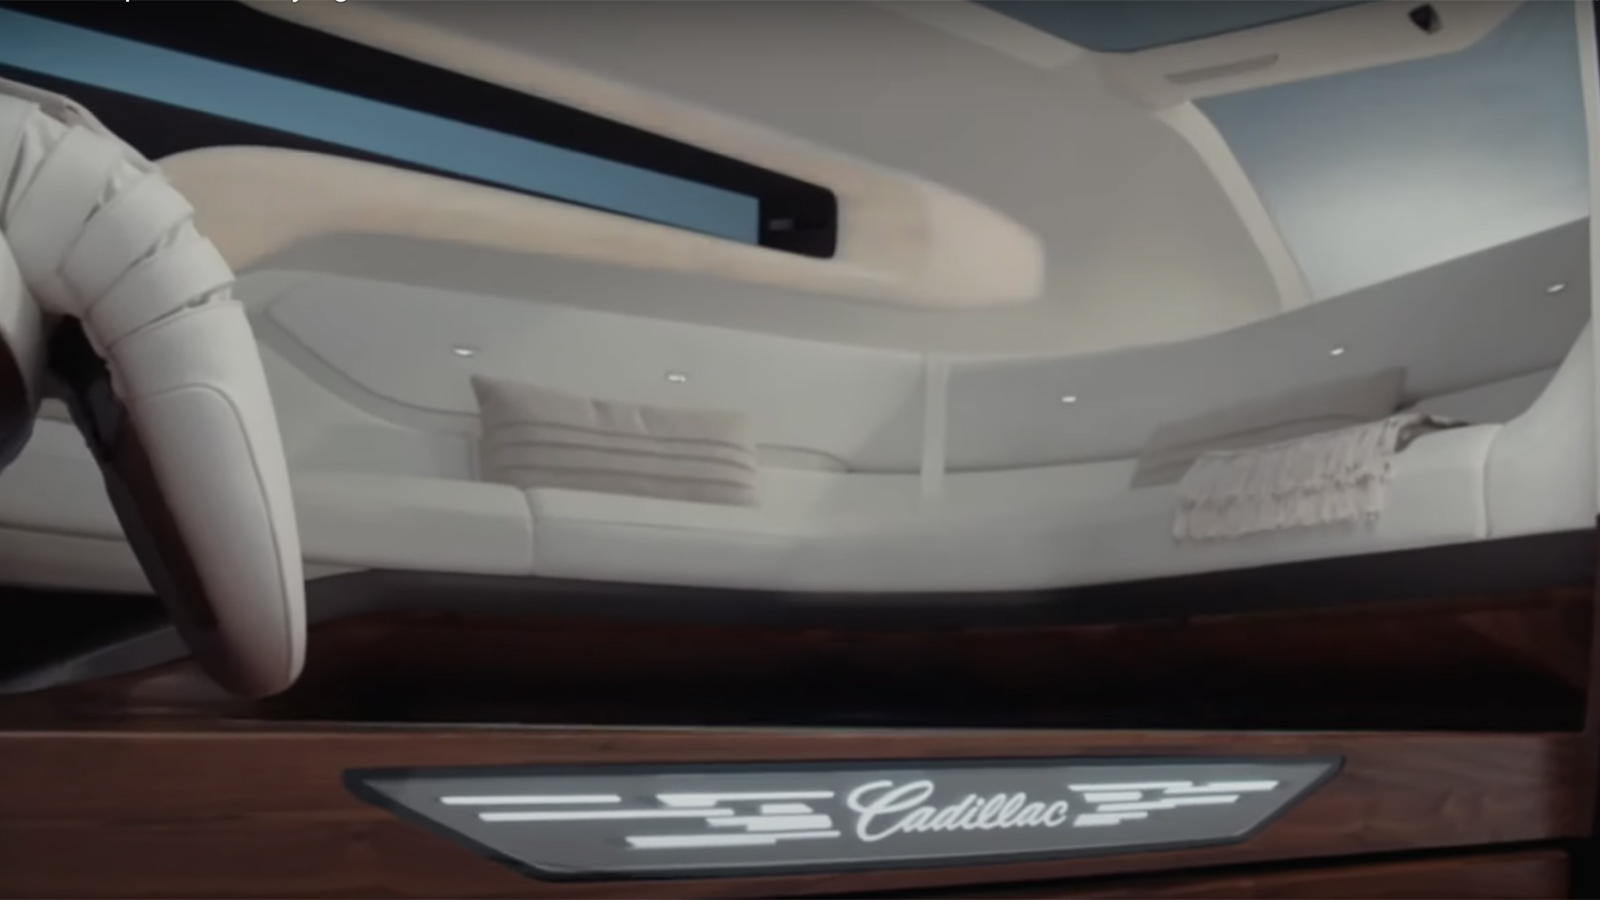 Cadillac reveals fanciful drone and autonomous car concepts | Autoblog